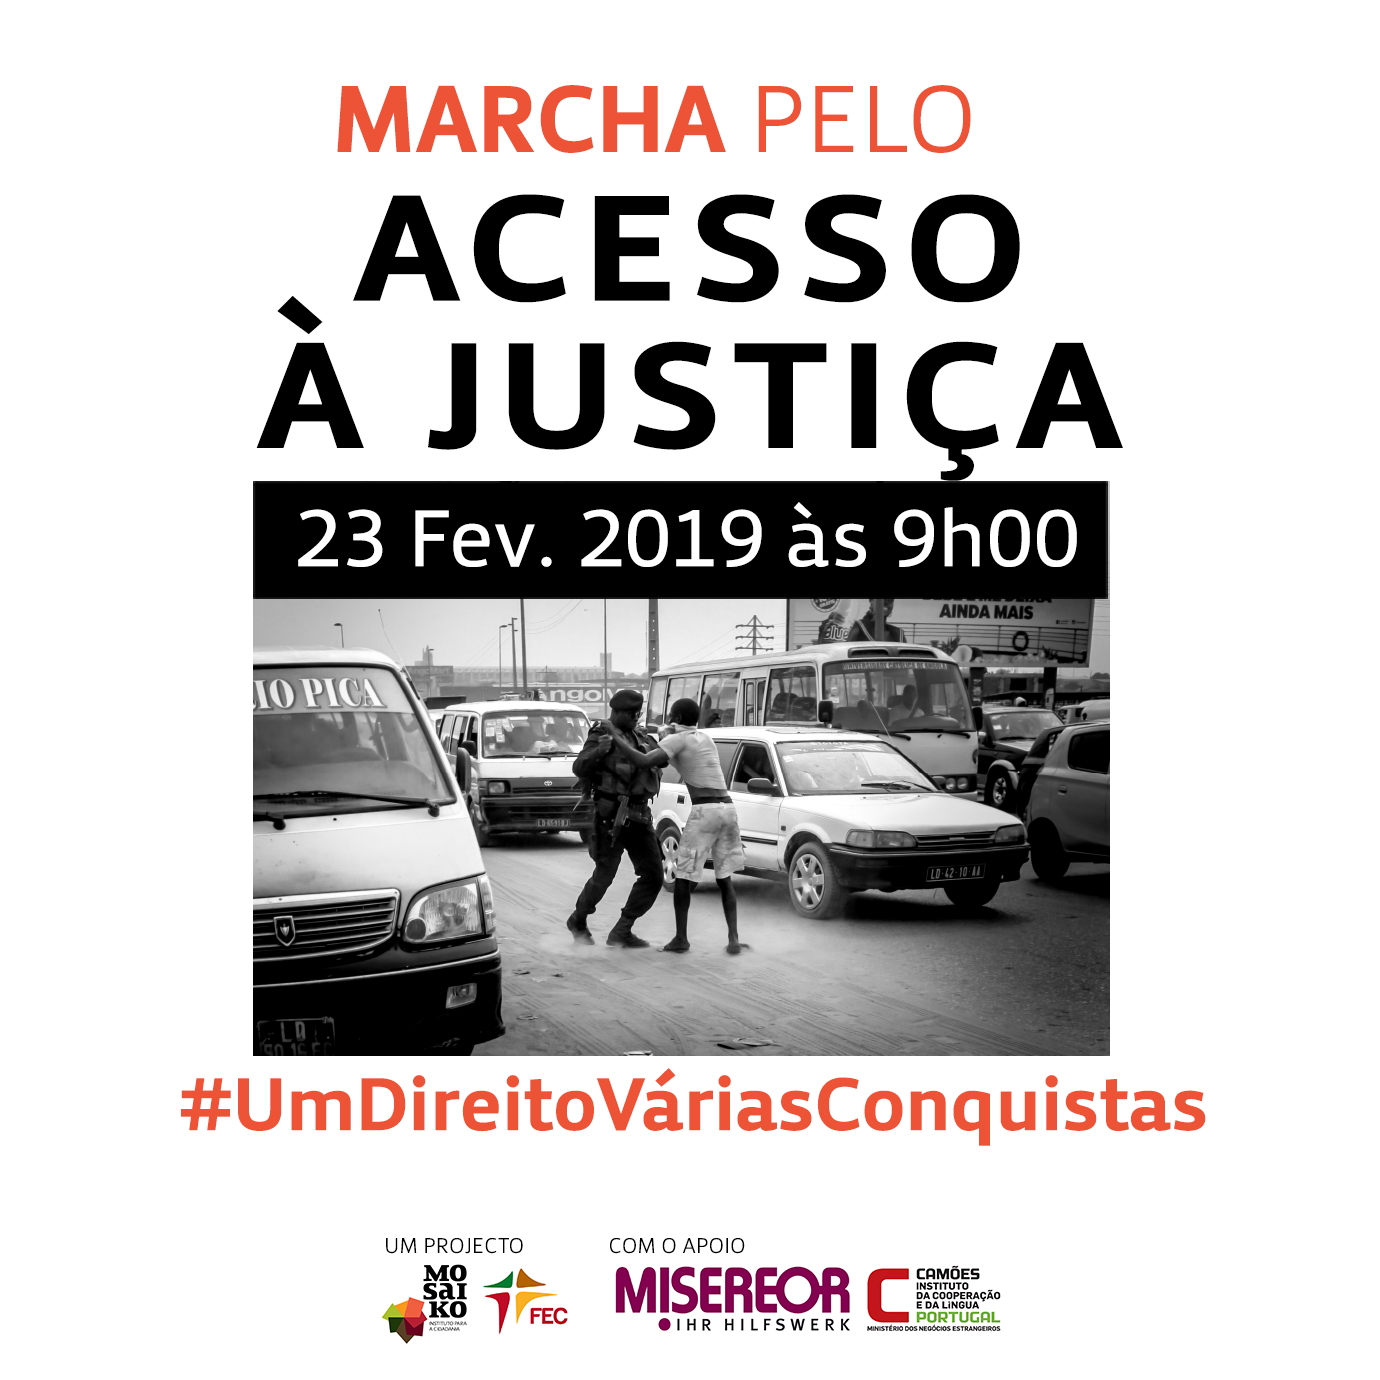 Marcha pela Justiça em Angola